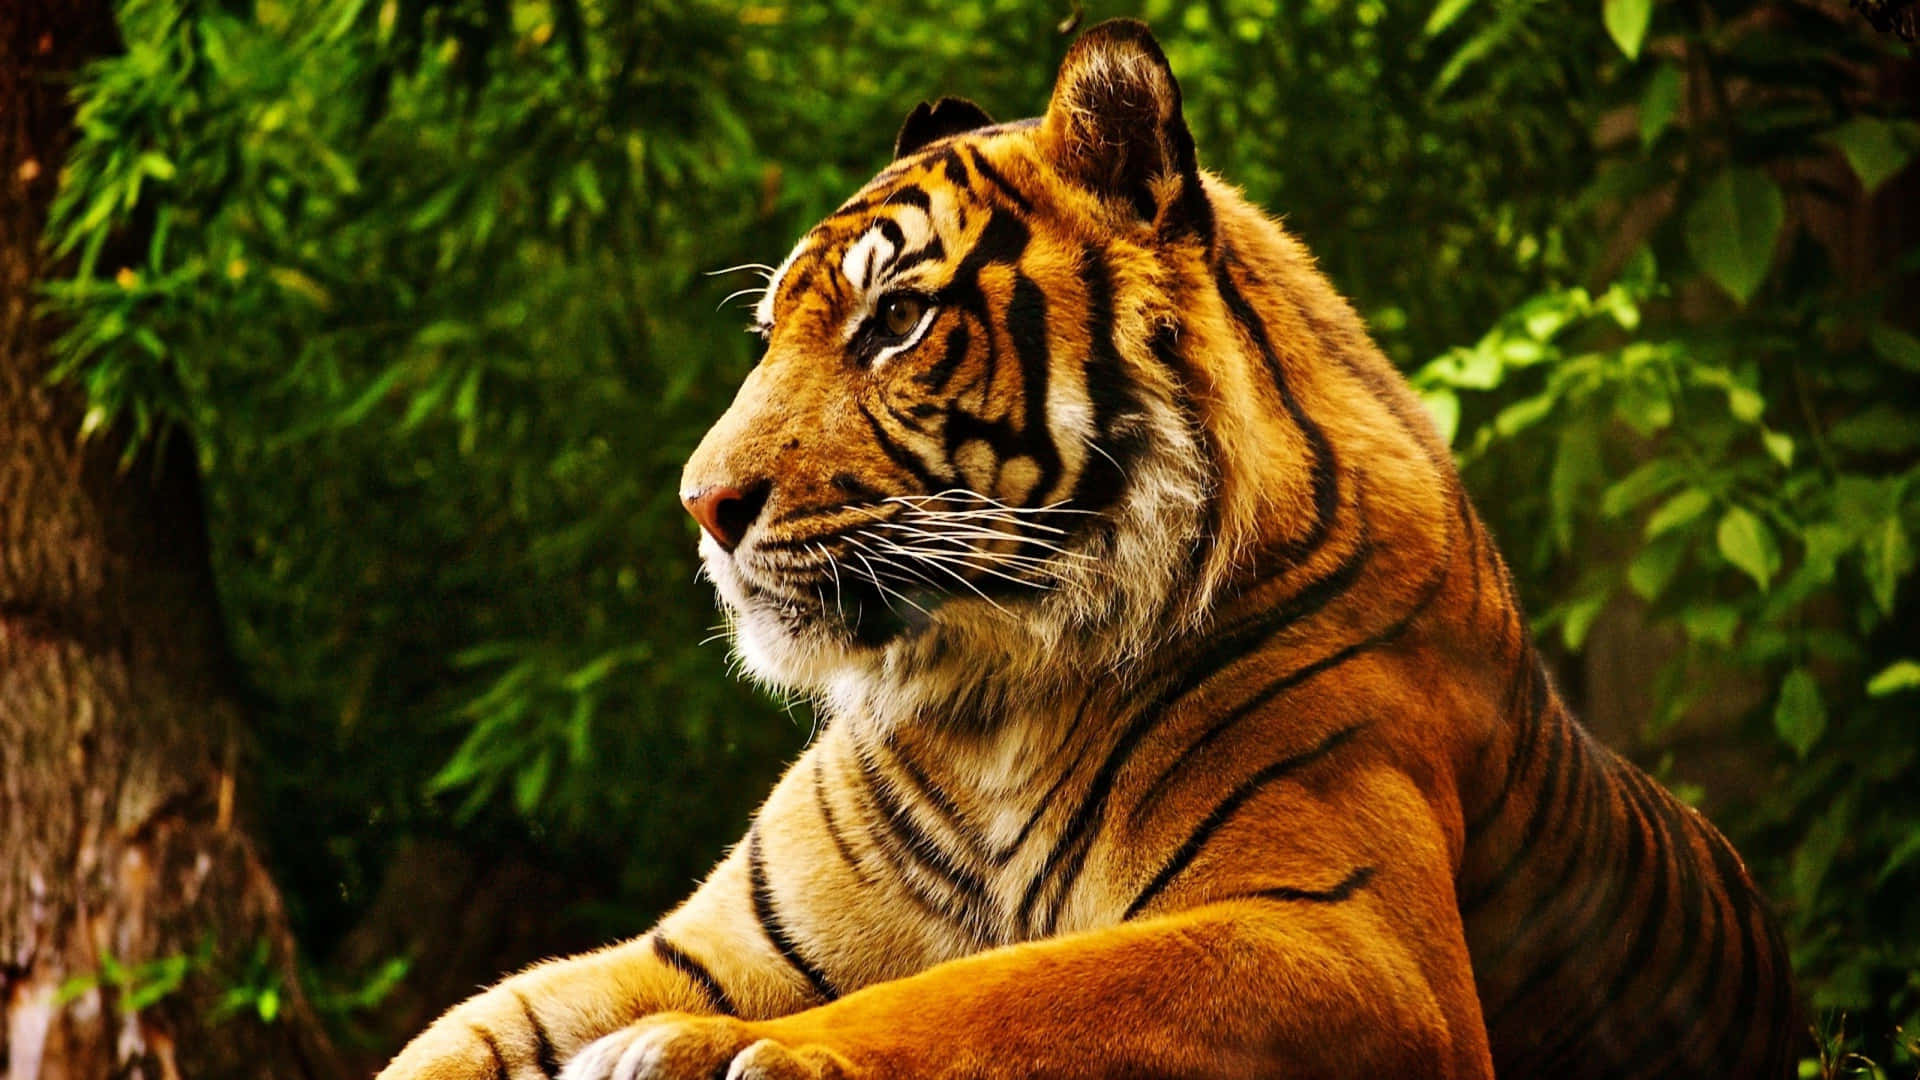 Cute Tropical Tiger Wallpaper